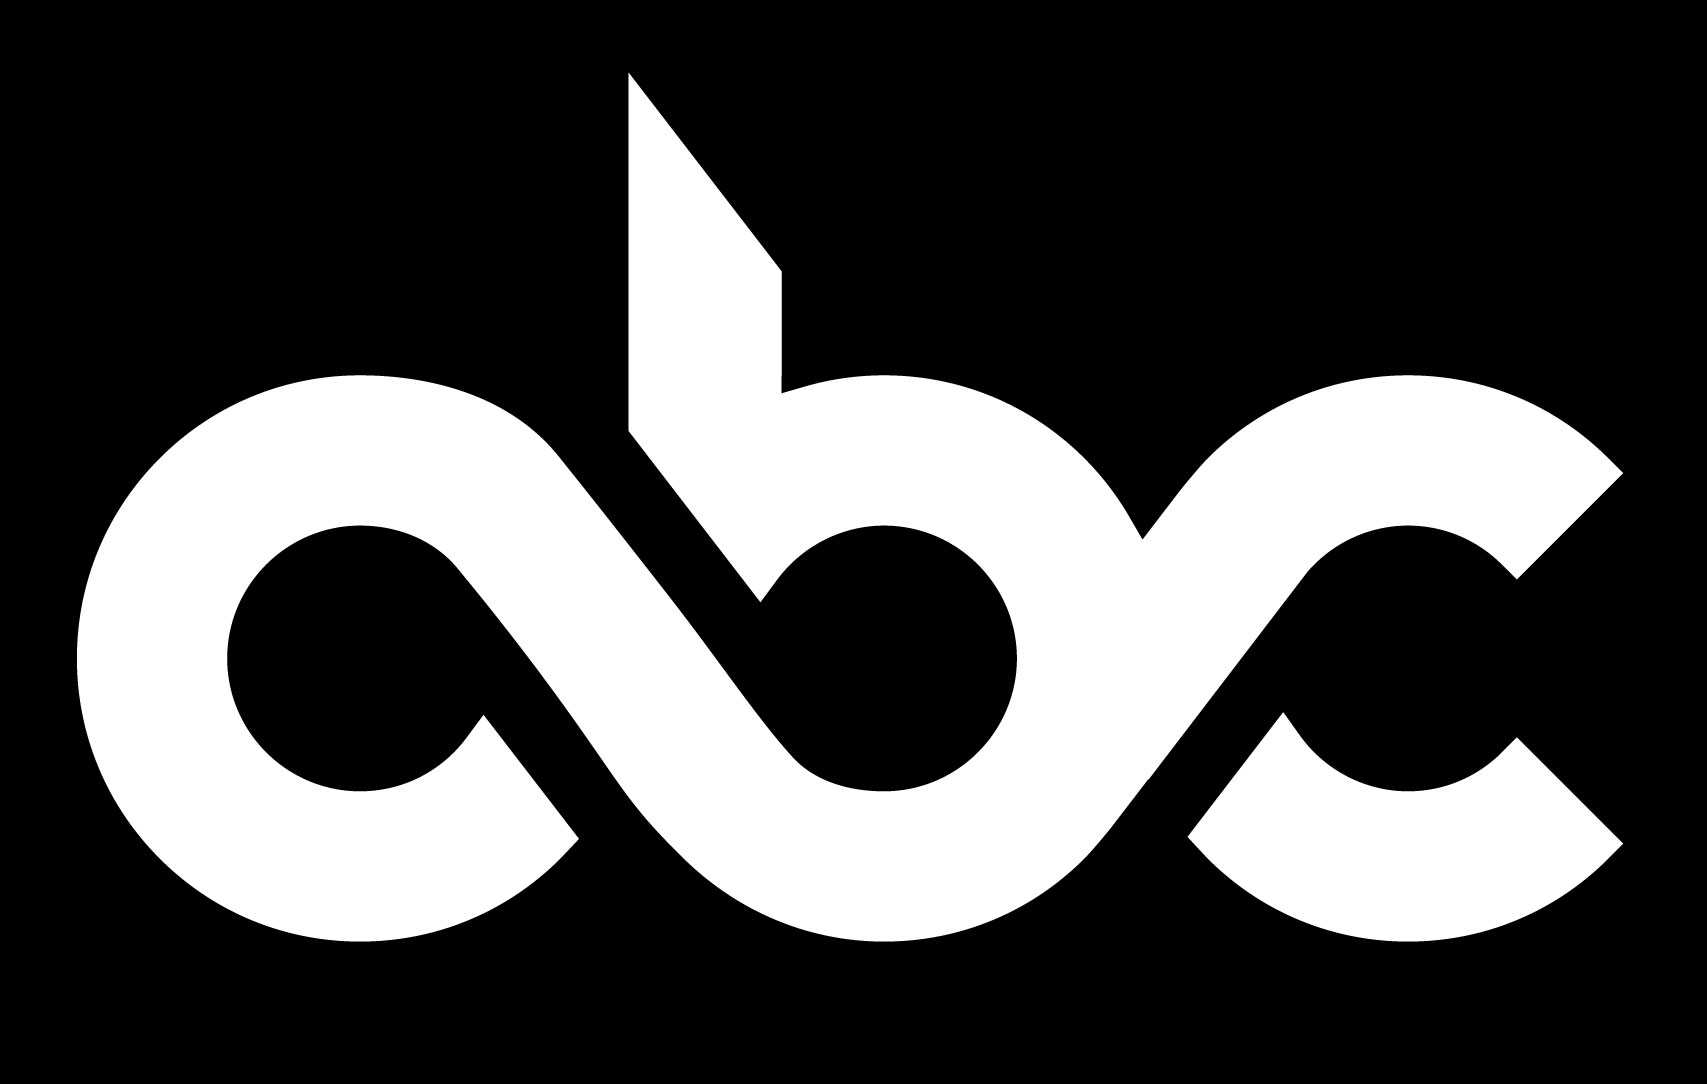 ABC-logo